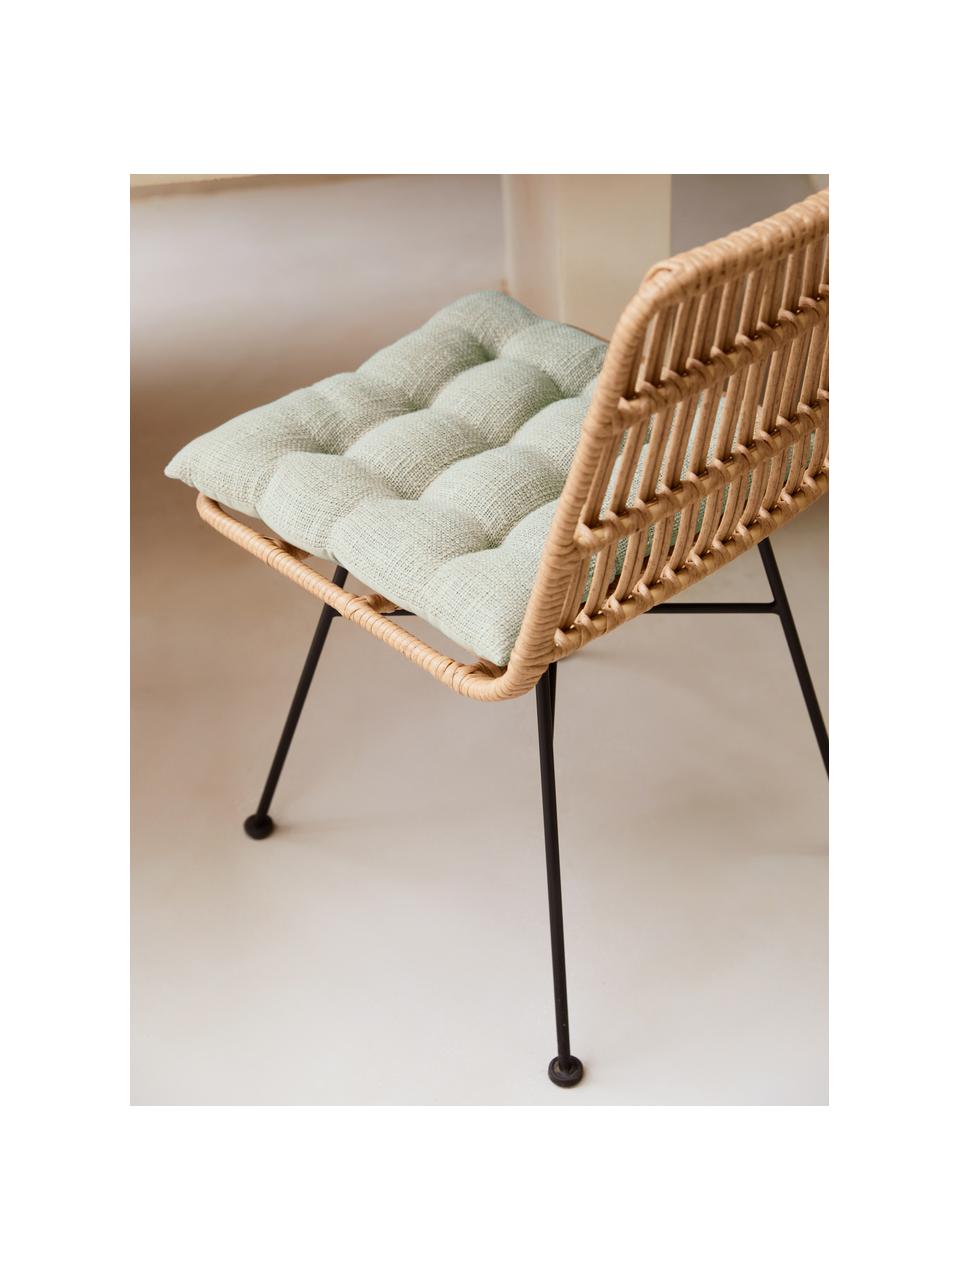 Baumwoll-Sitzkissen Sasha in Cremeweiß, Bezug: 100% Baumwolle, Cremeweiß, B 40 x L 40 cm